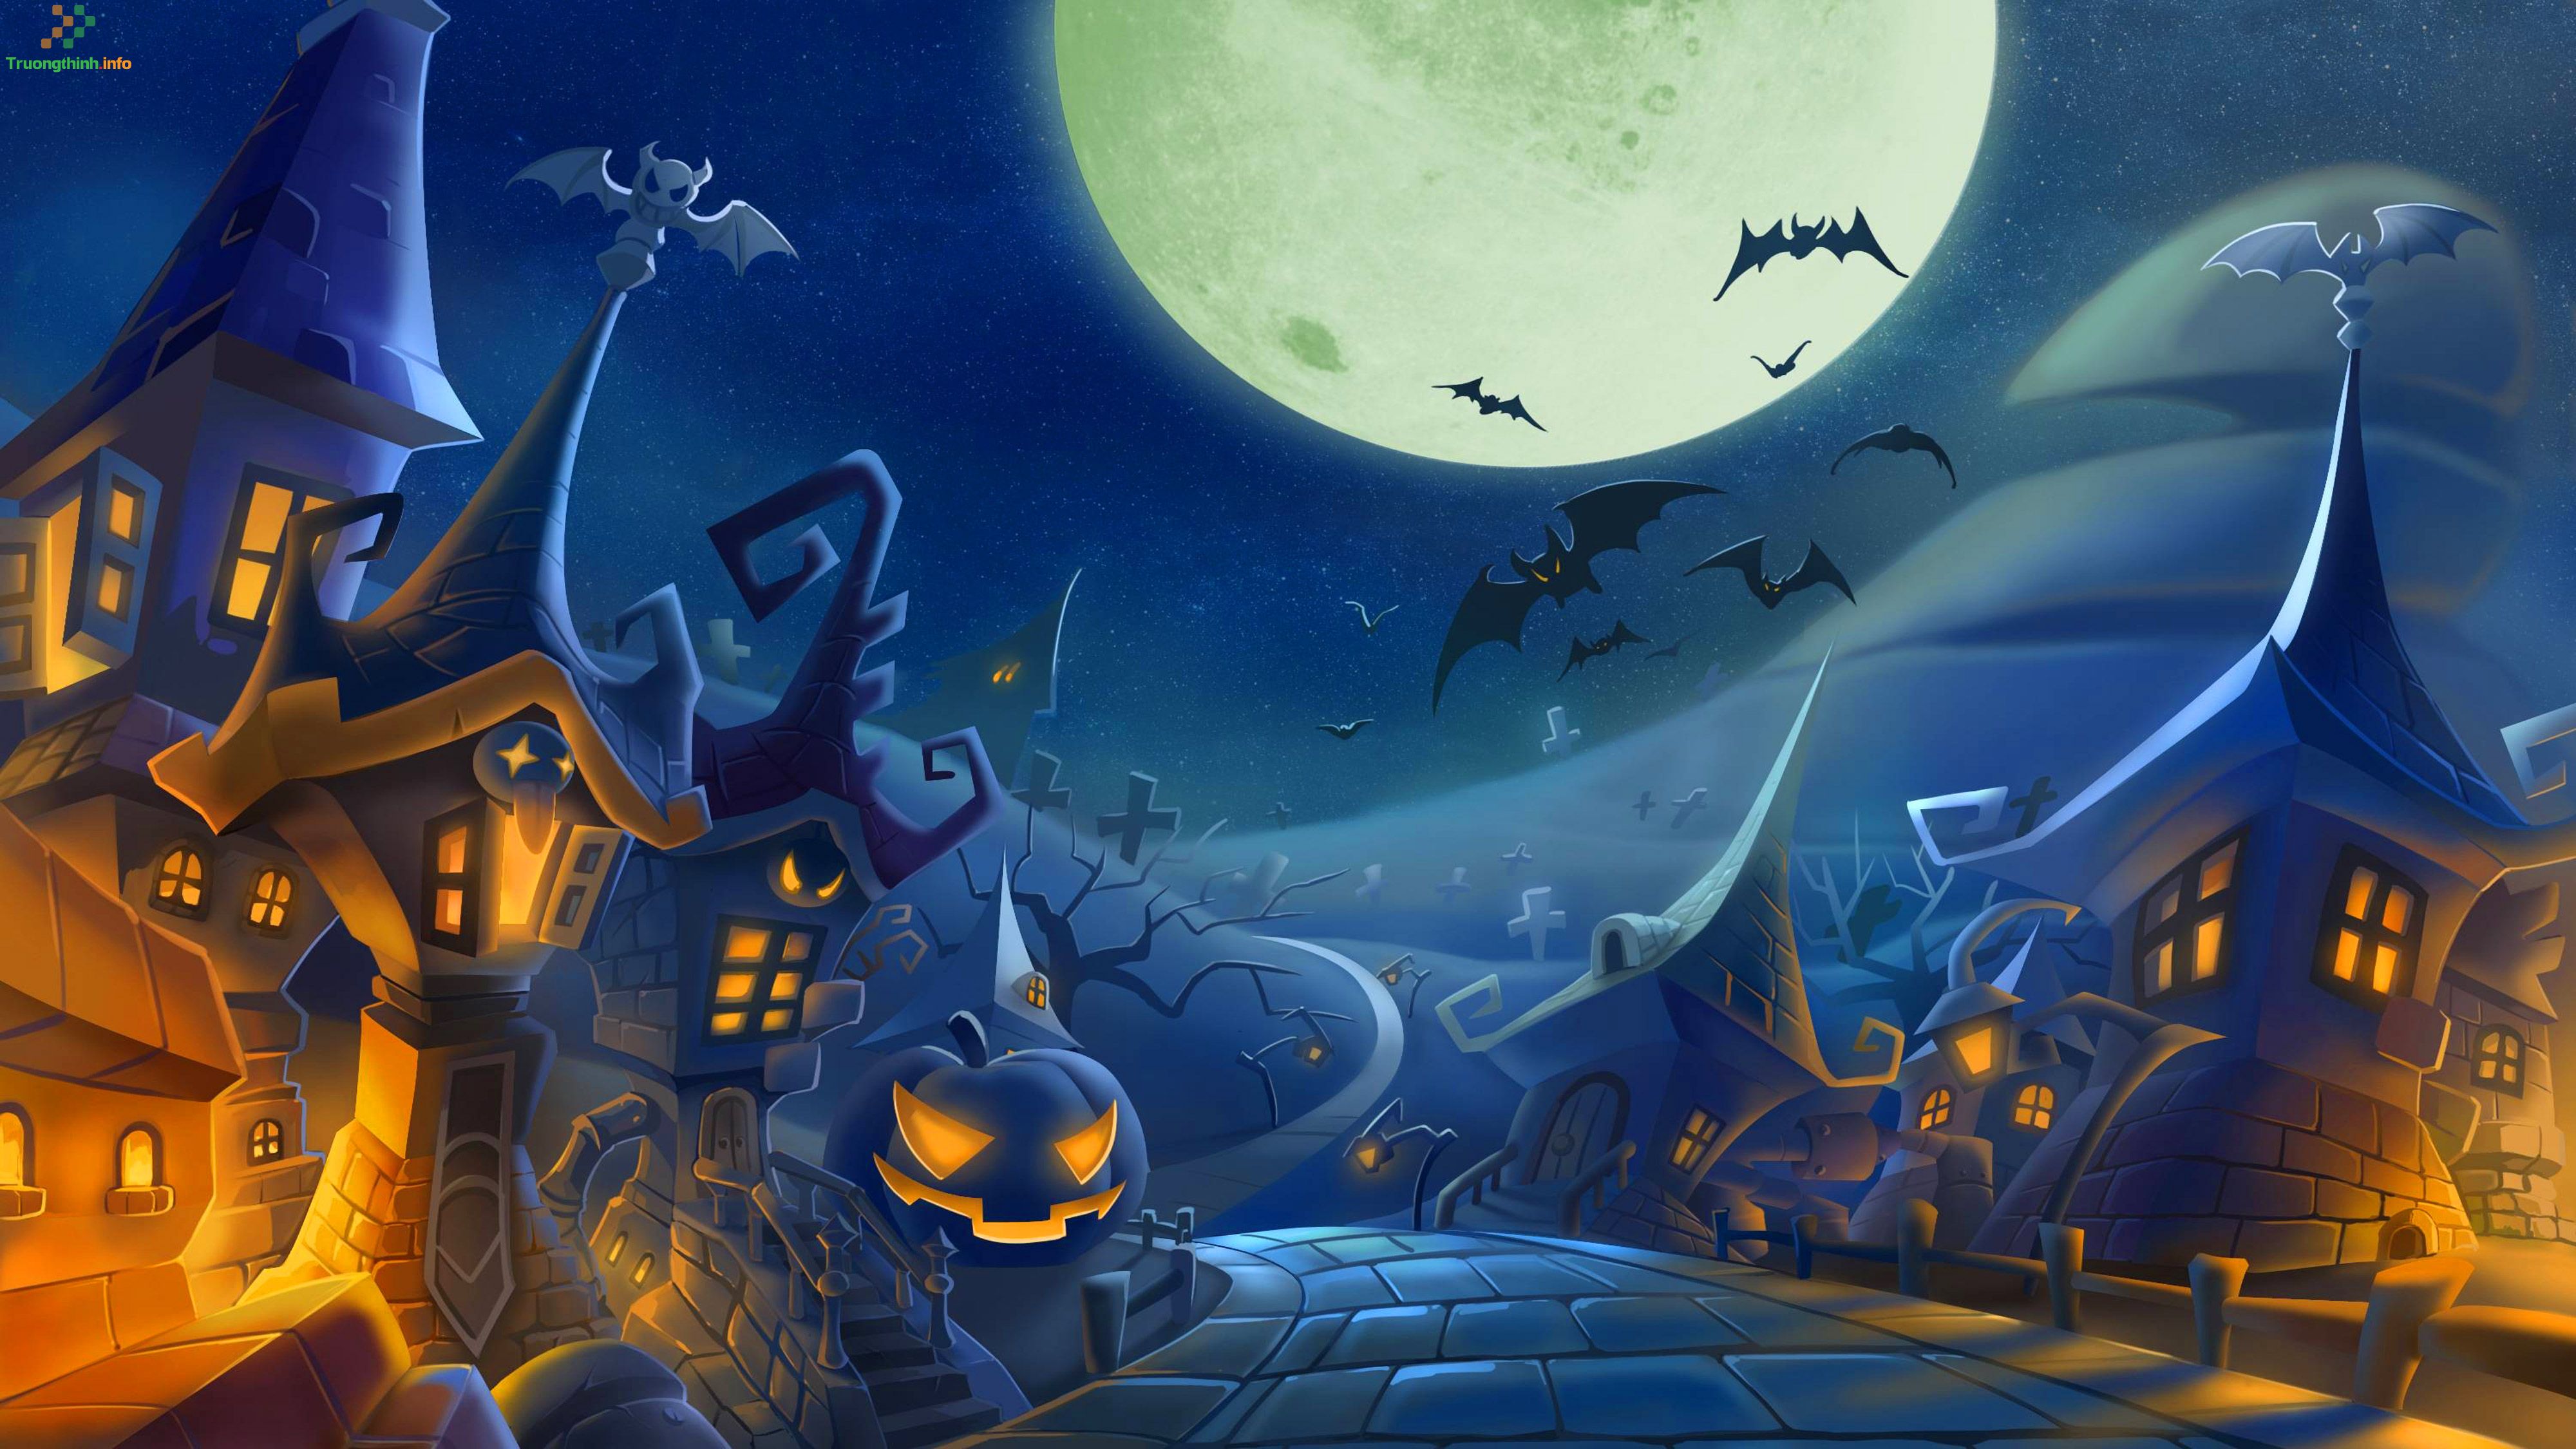 Tìm hiểu cách vẽ tranh Halloween đơn giản và dễ thực hiện, sẽ giúp bạn có được những bức tranh vui nhộn và đáng sợ nhất trong đêm Halloween.